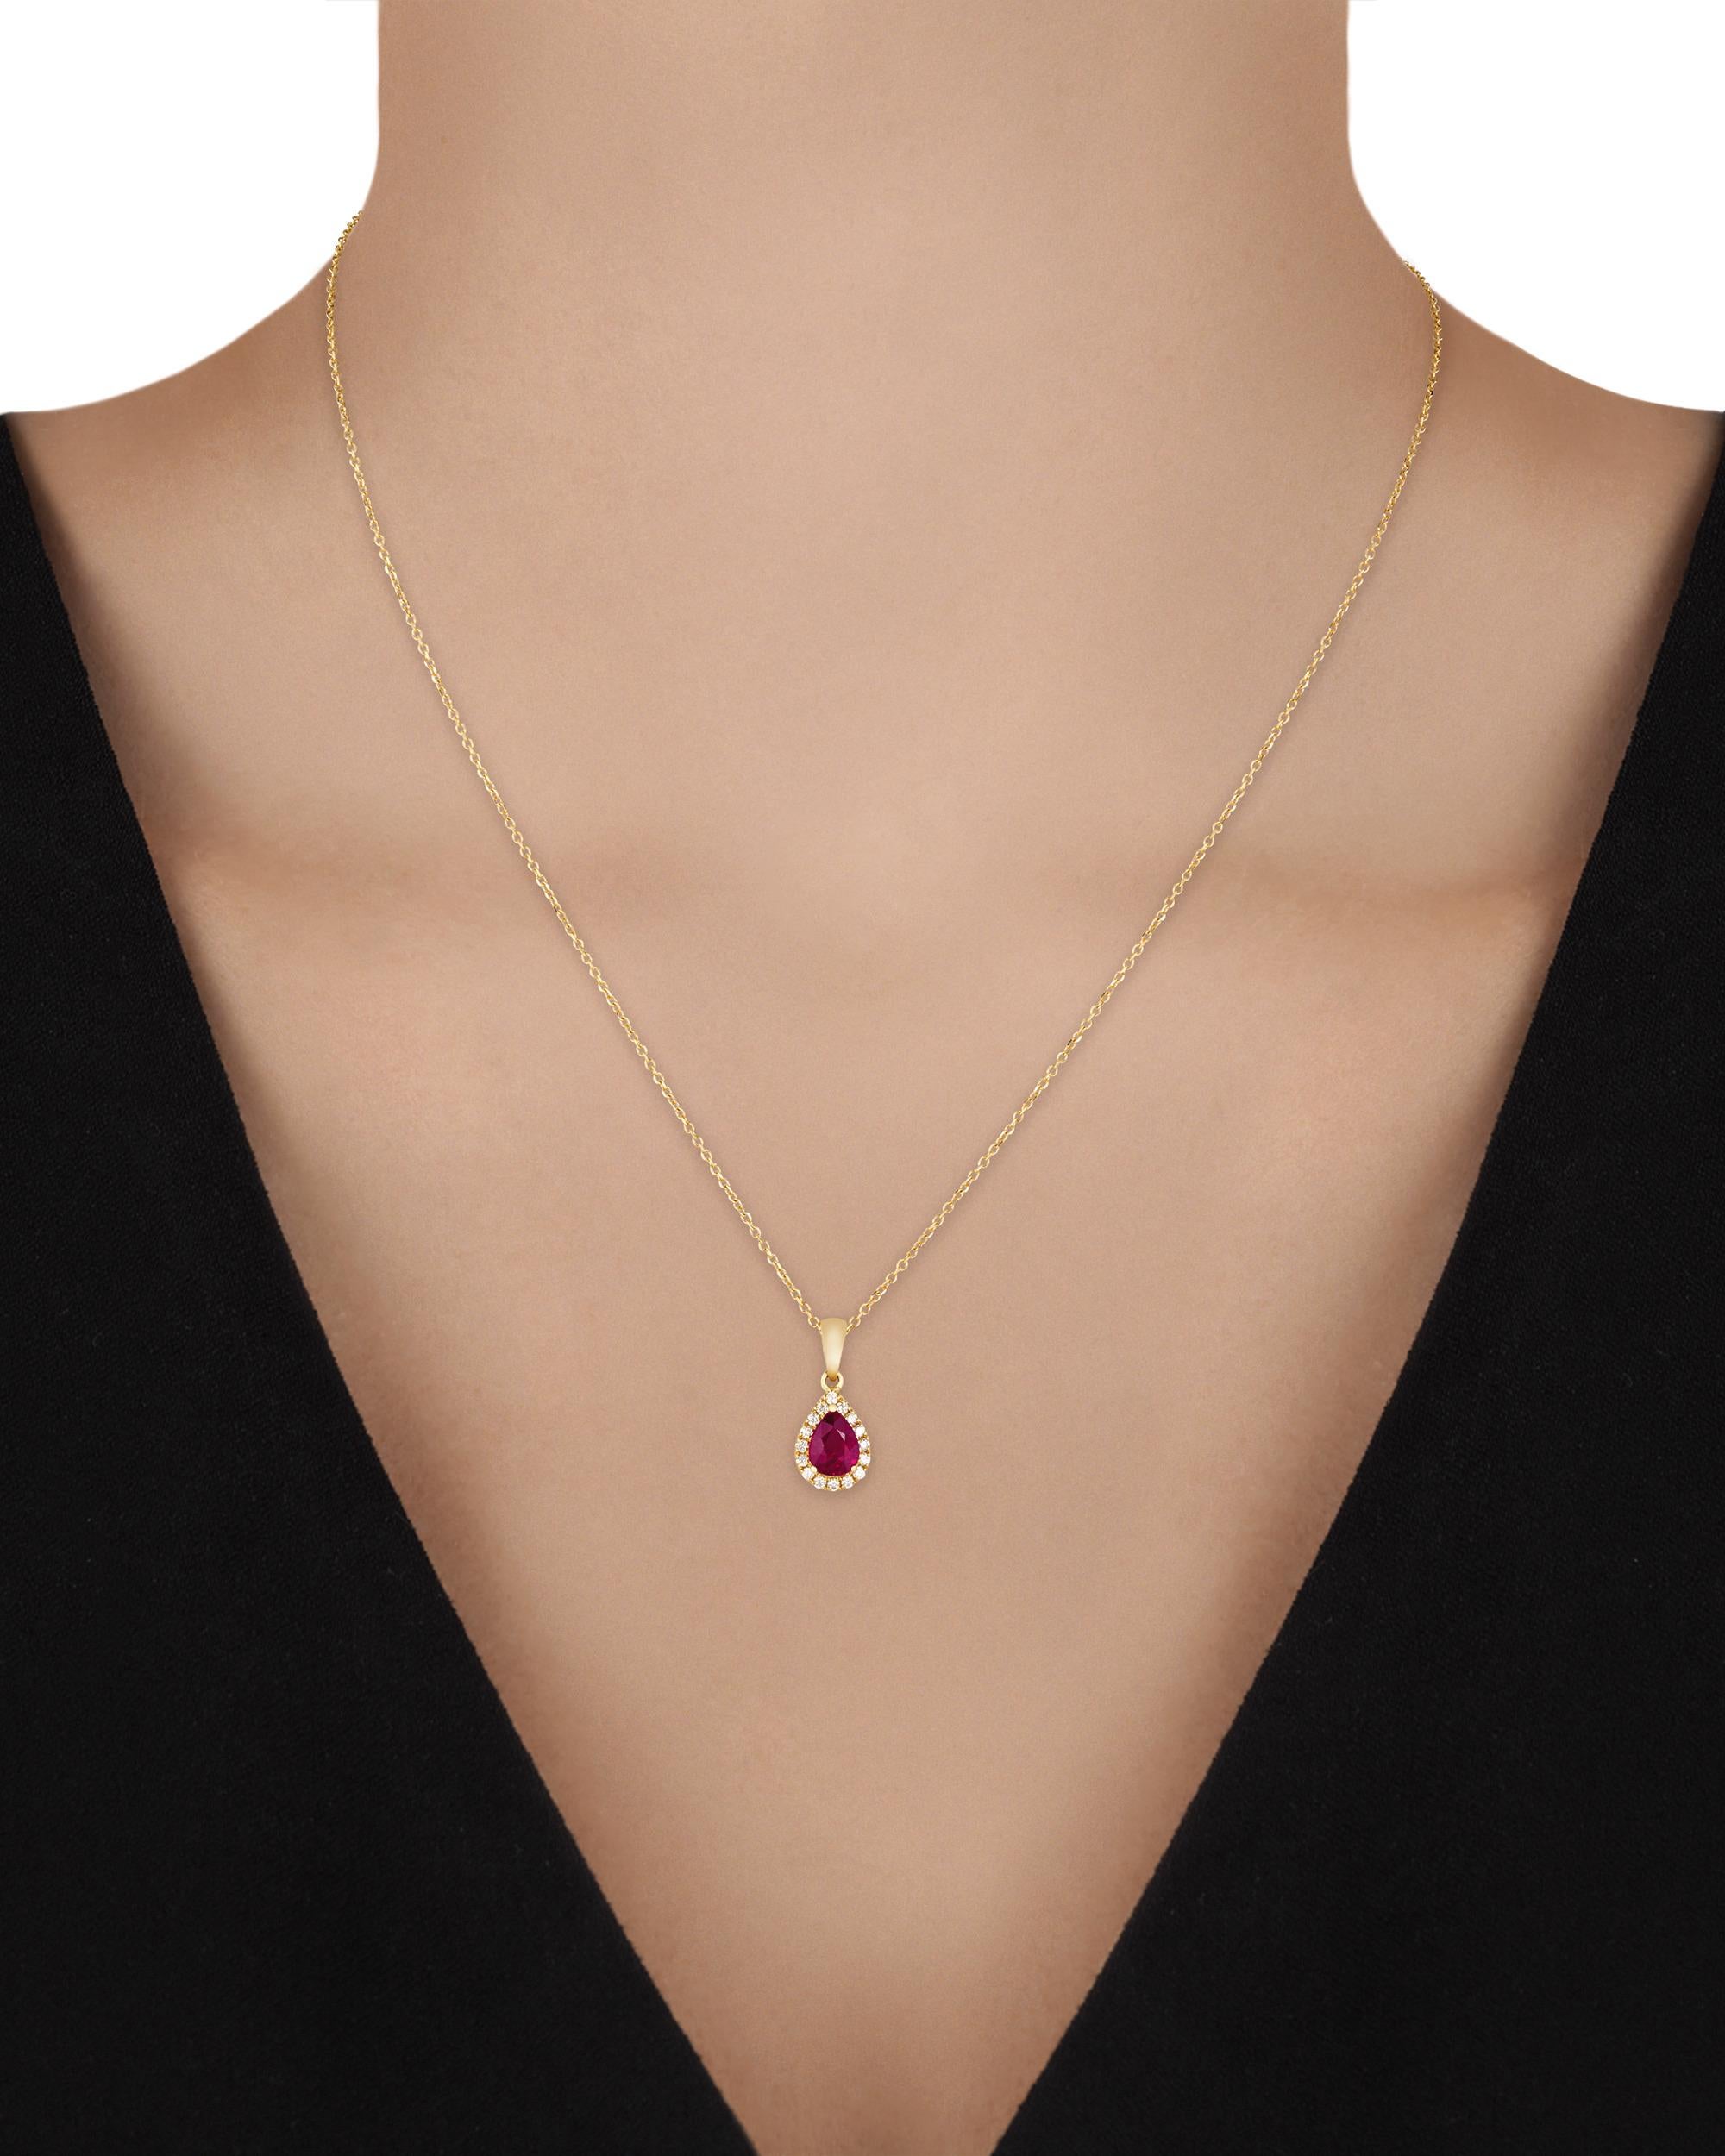 Le rubis central de cet élégant collier pendentif pèse 1,03 carat et présente une teinte rouge foncé très recherchée. Accentué par des diamants totalisant 0,15 carats. Sertie en or jaune 18 carats.

Pendentif : 3/4